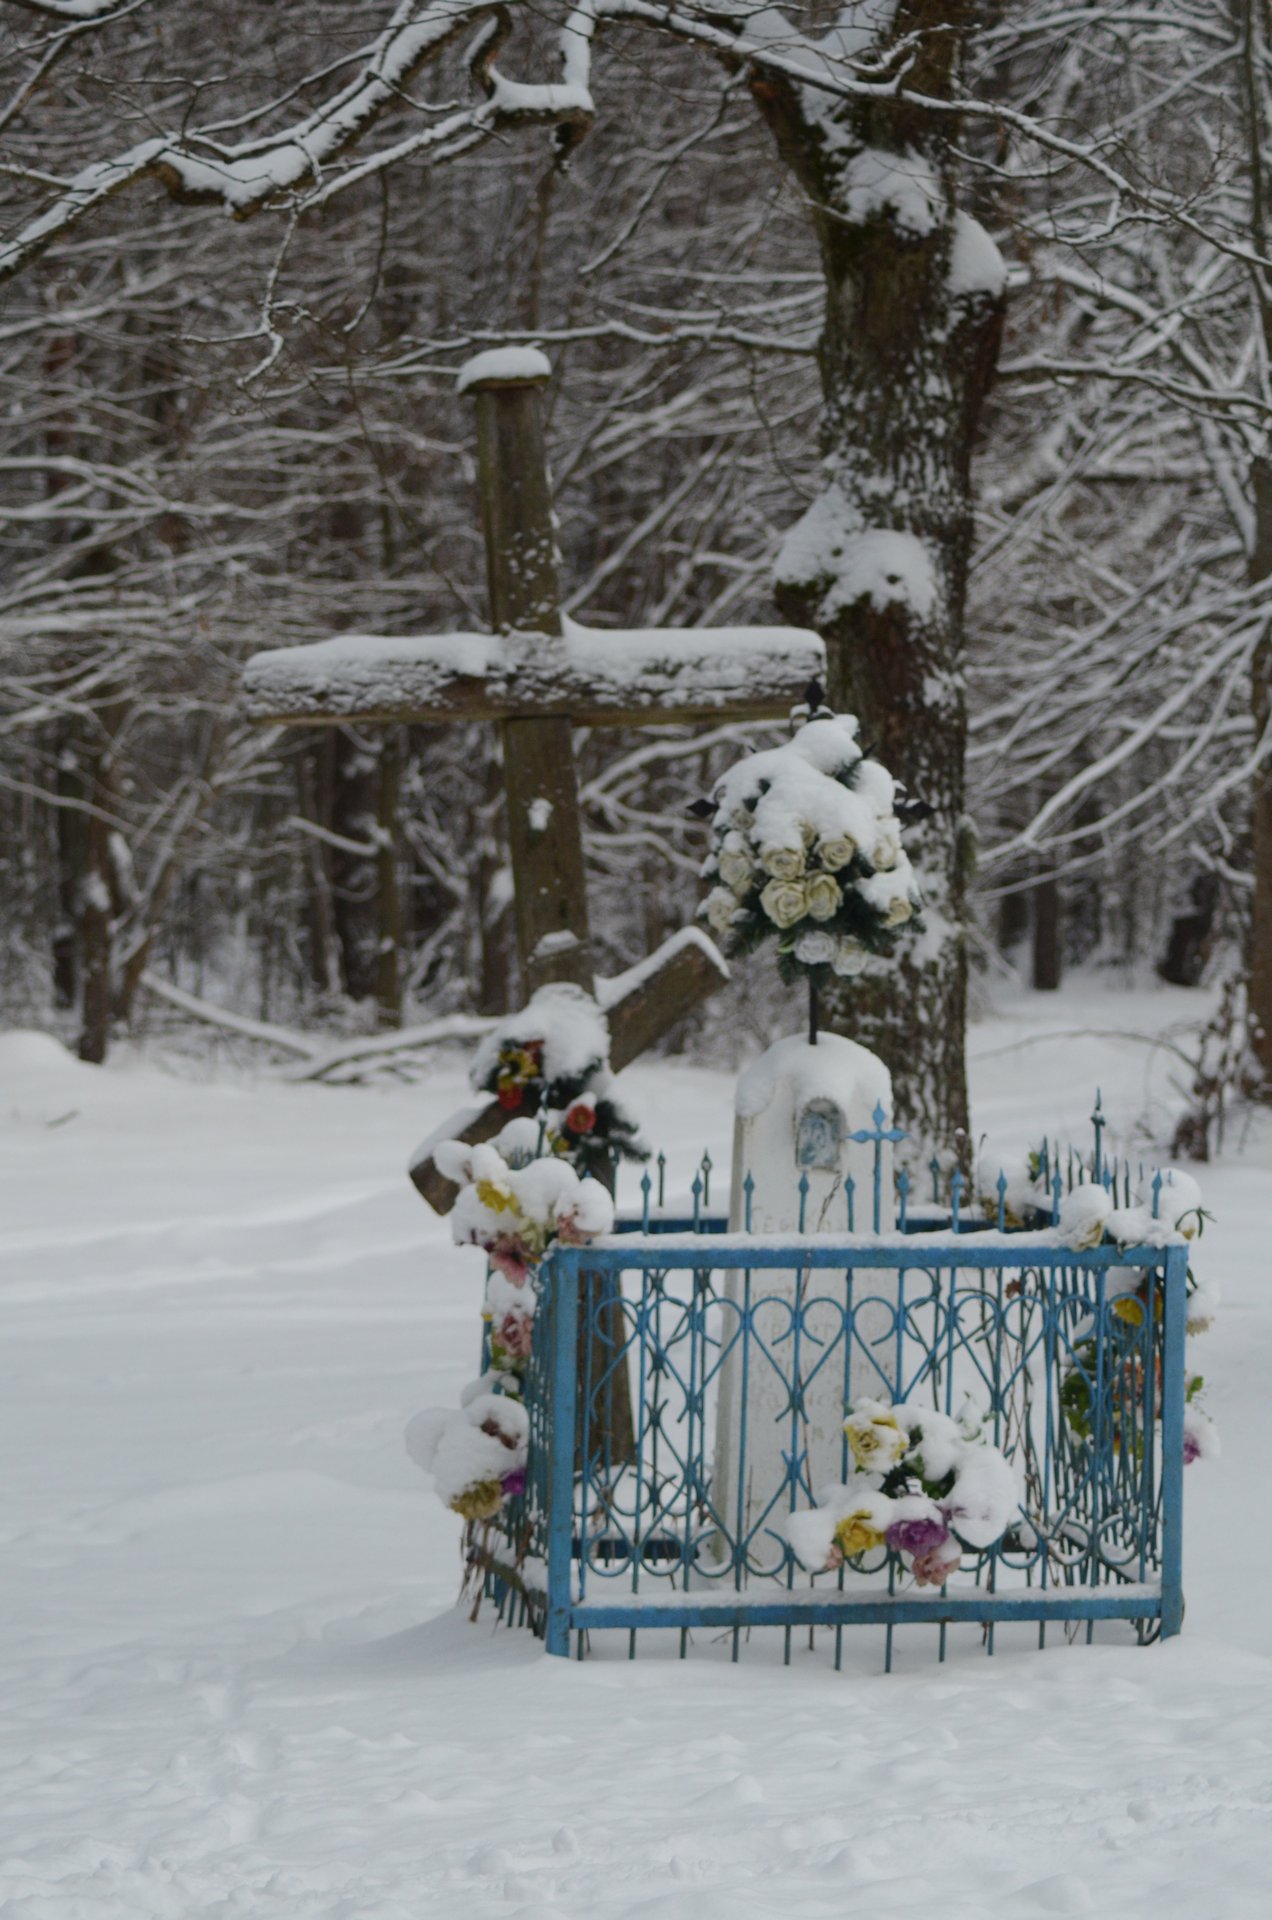 krzyż religia prawosławie cerkiew kapliczka zima